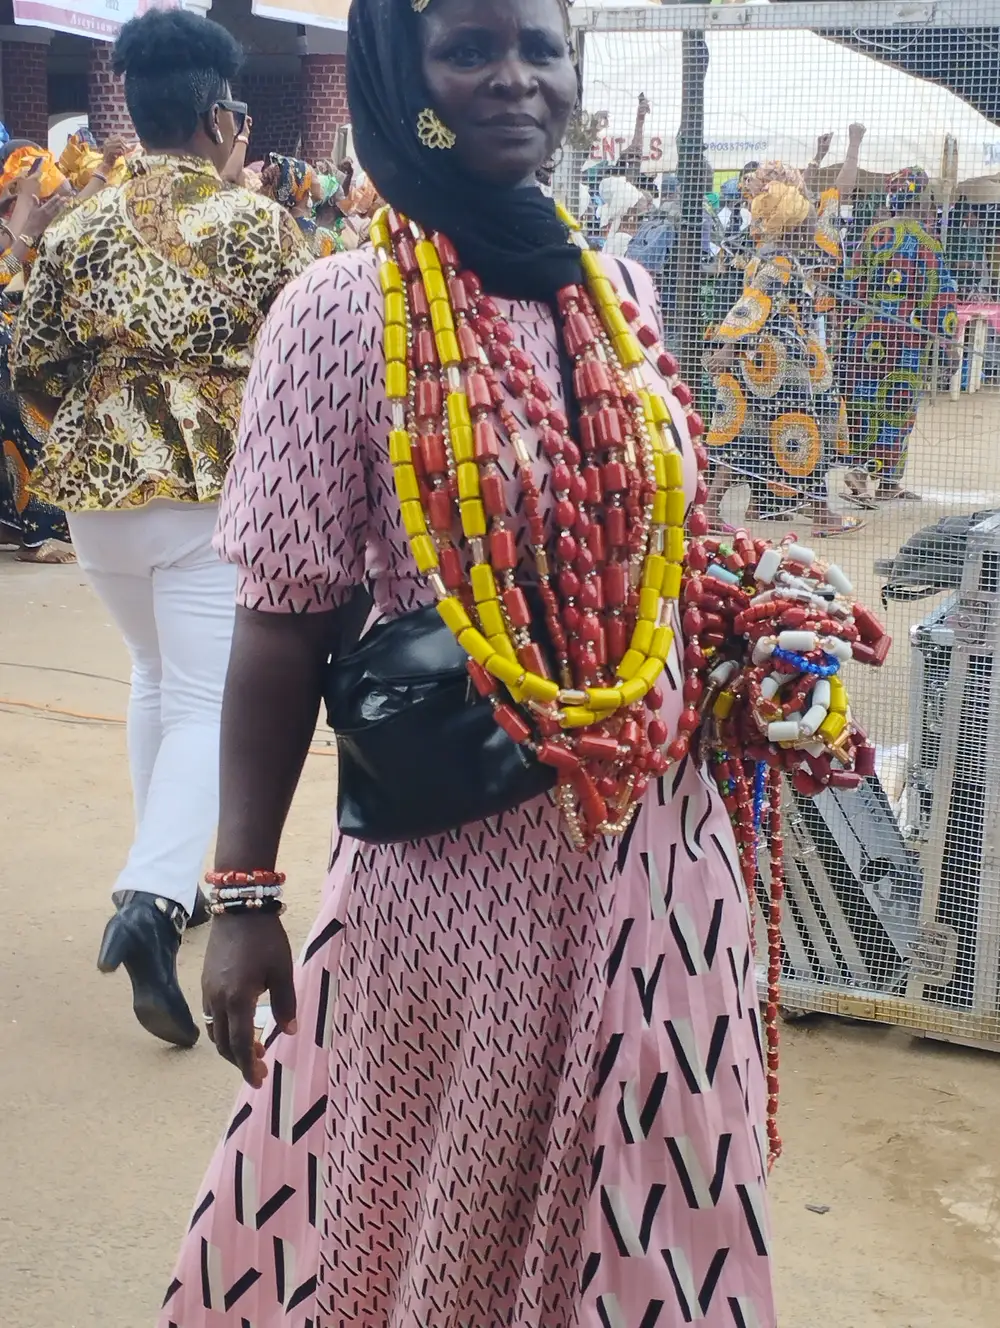 A Woman wearing Beads